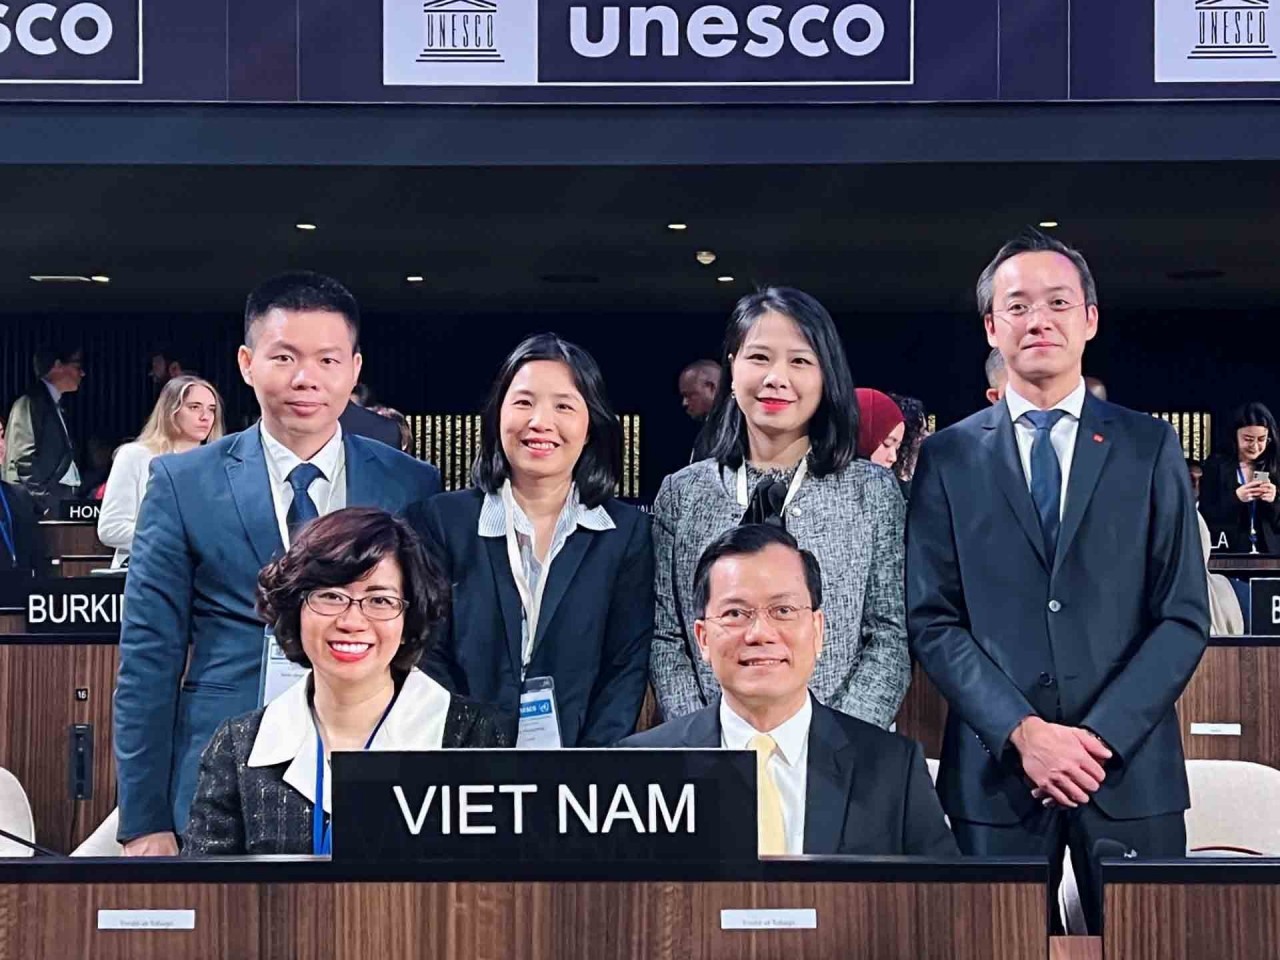 Đối ngoại trong tuần: Việt Nam đã vinh dự được tín nhiệm bầu làm Phó Chủ tịch Đại hội đồng UNESCO